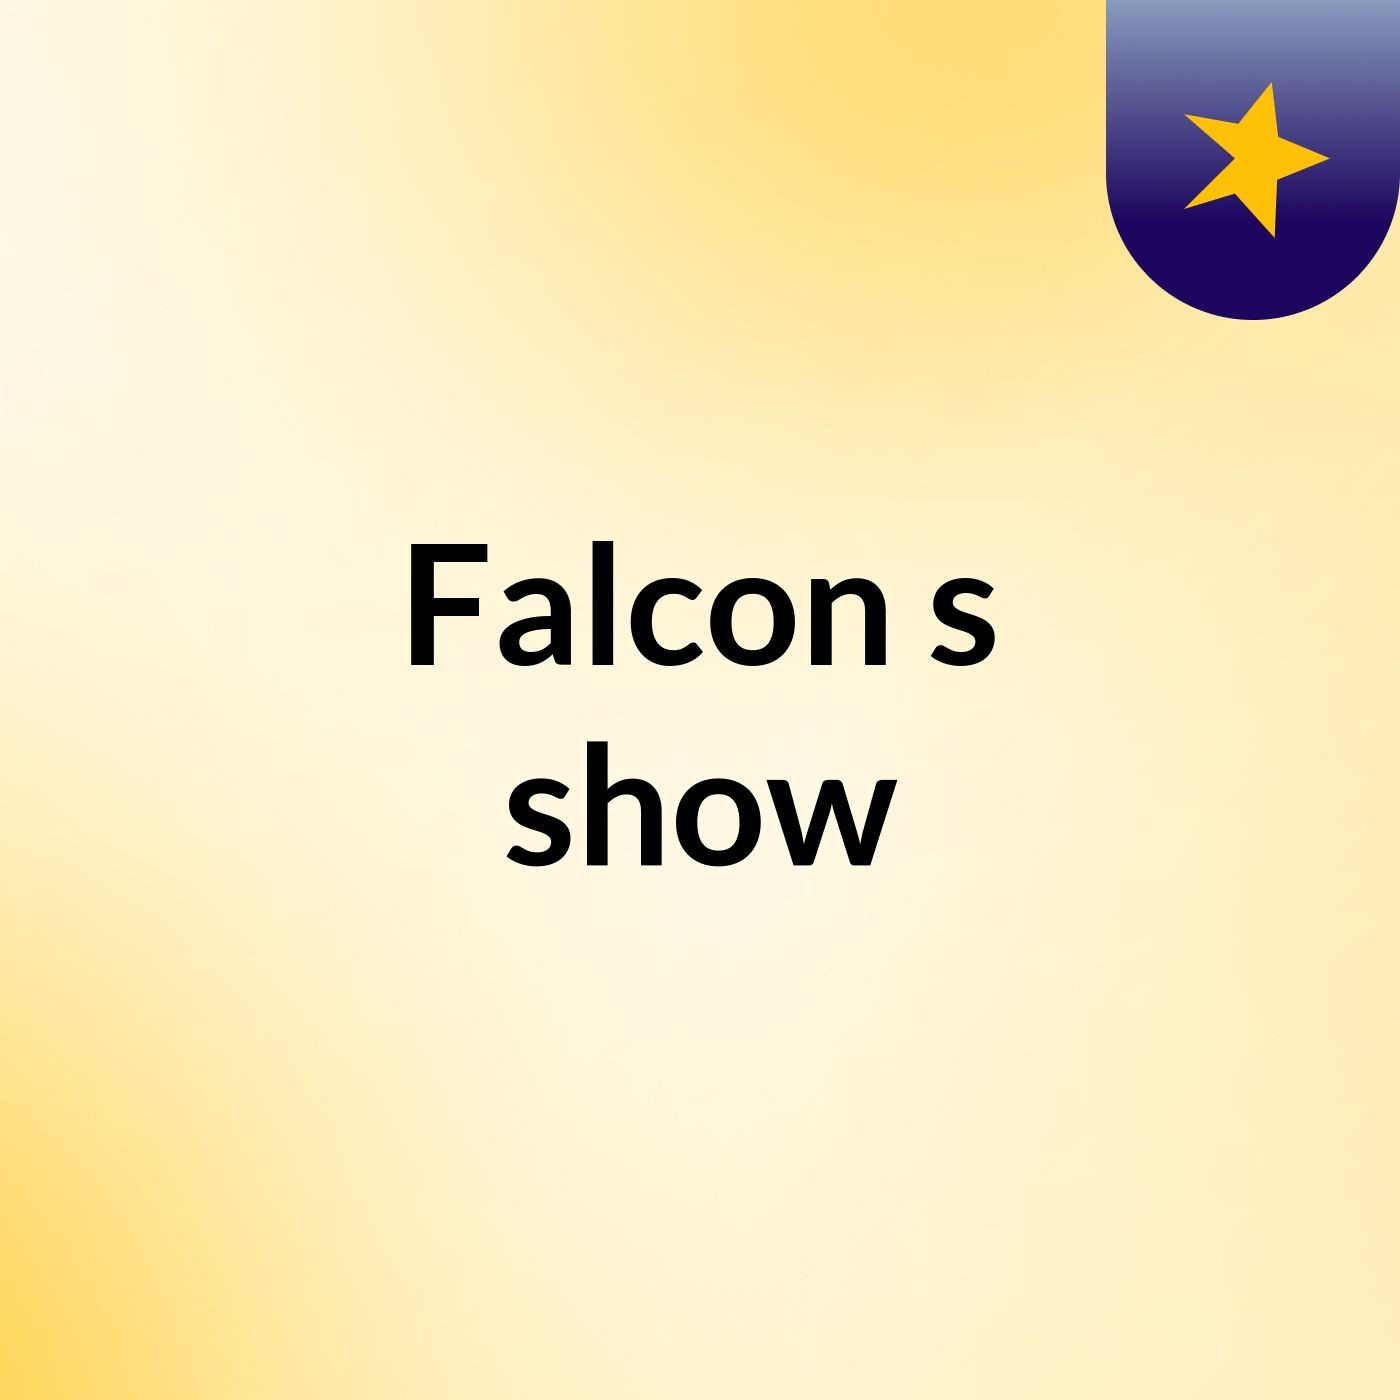 Falcon's show